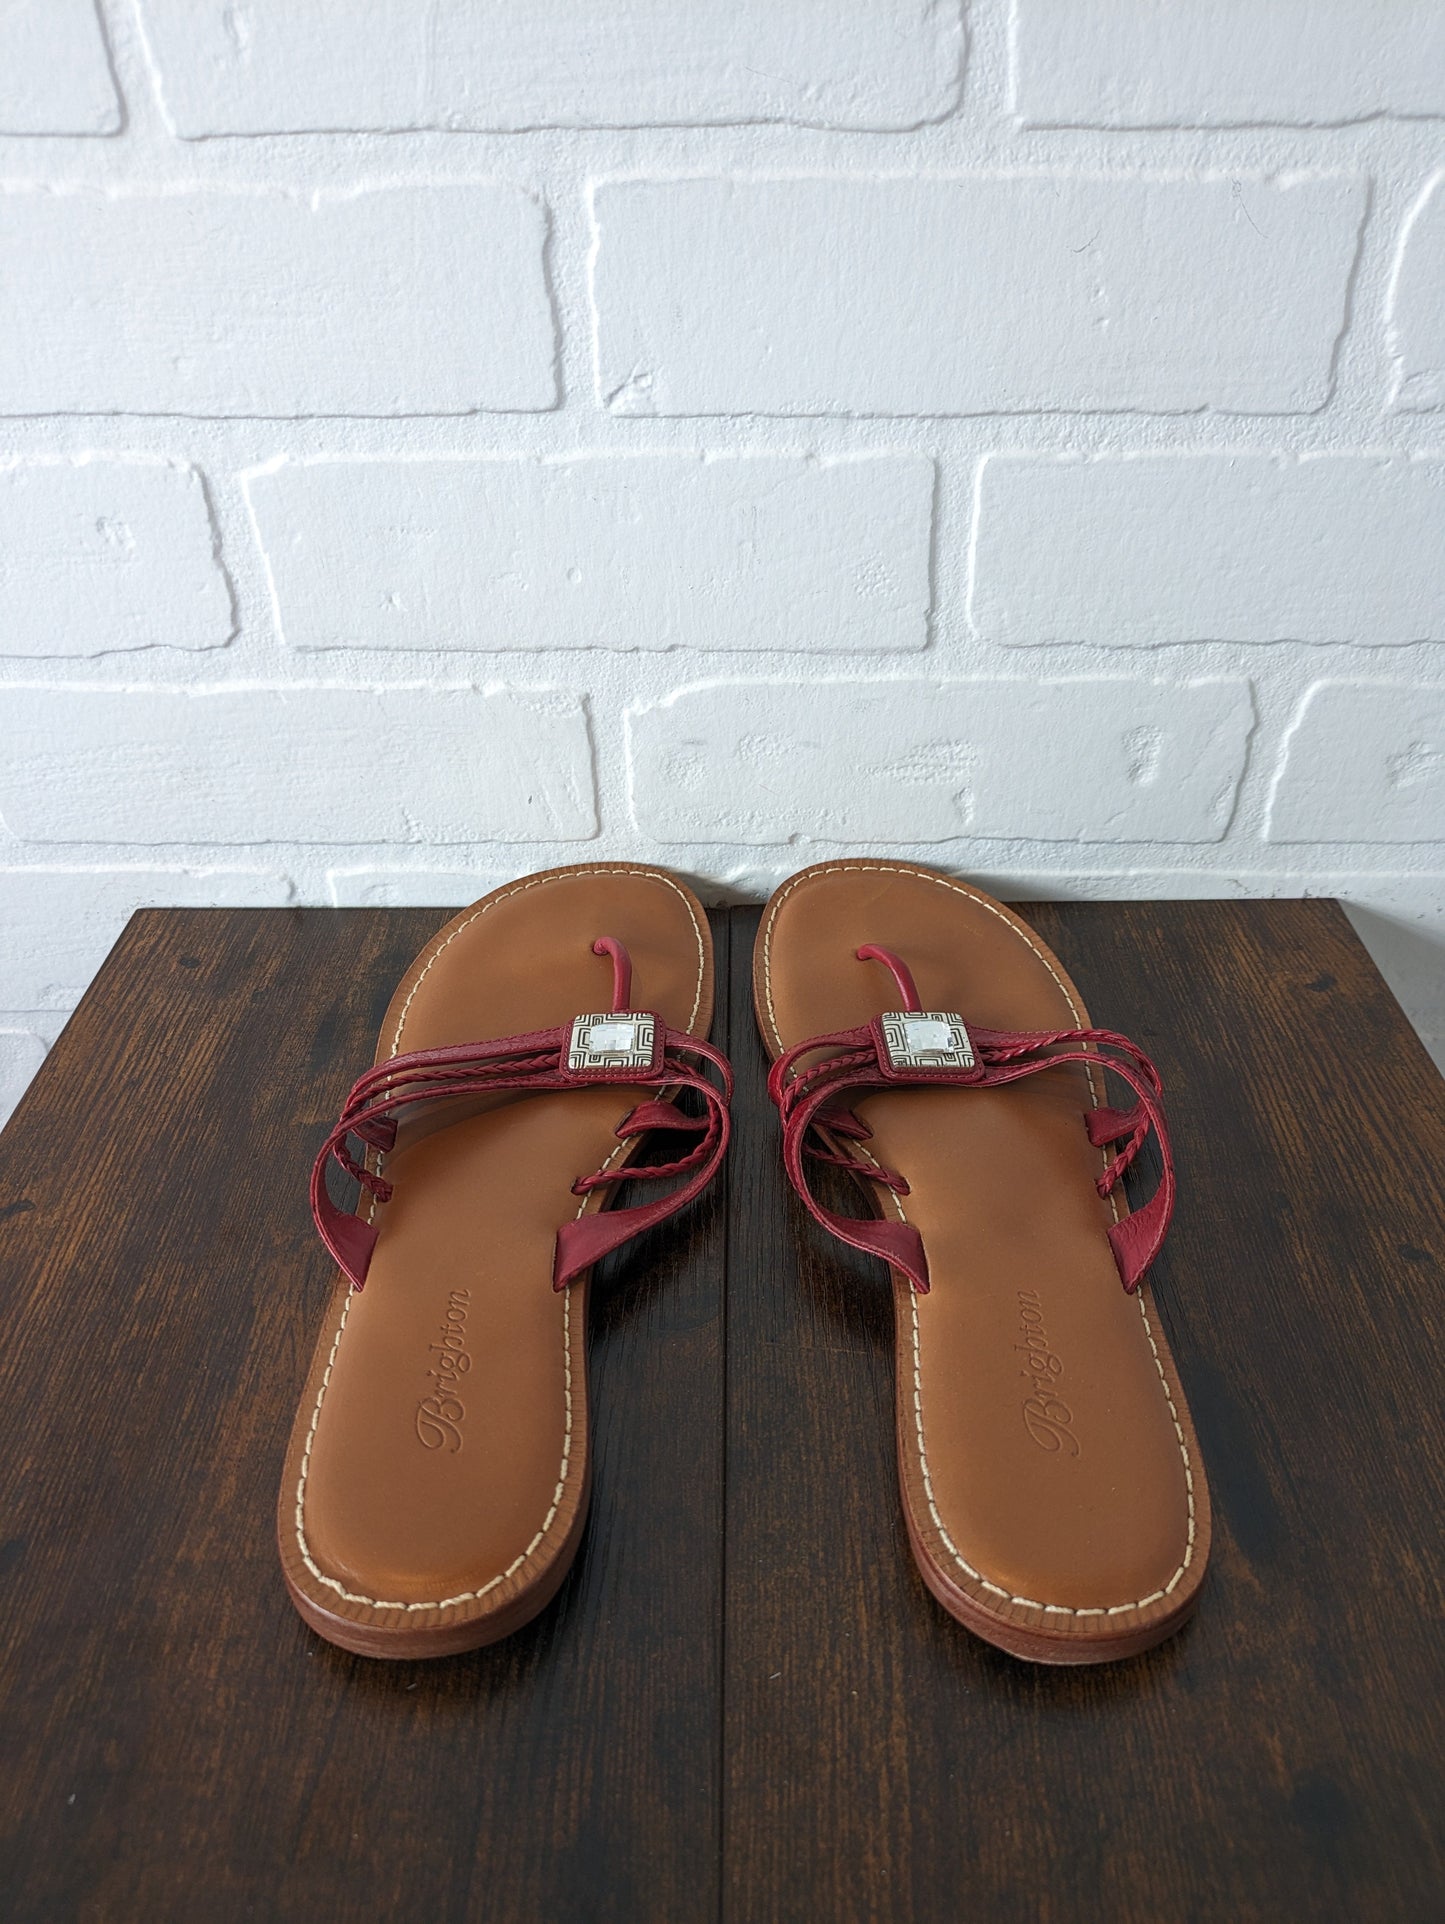 Sandals Flip Flops By Brighton  Size: 8.5